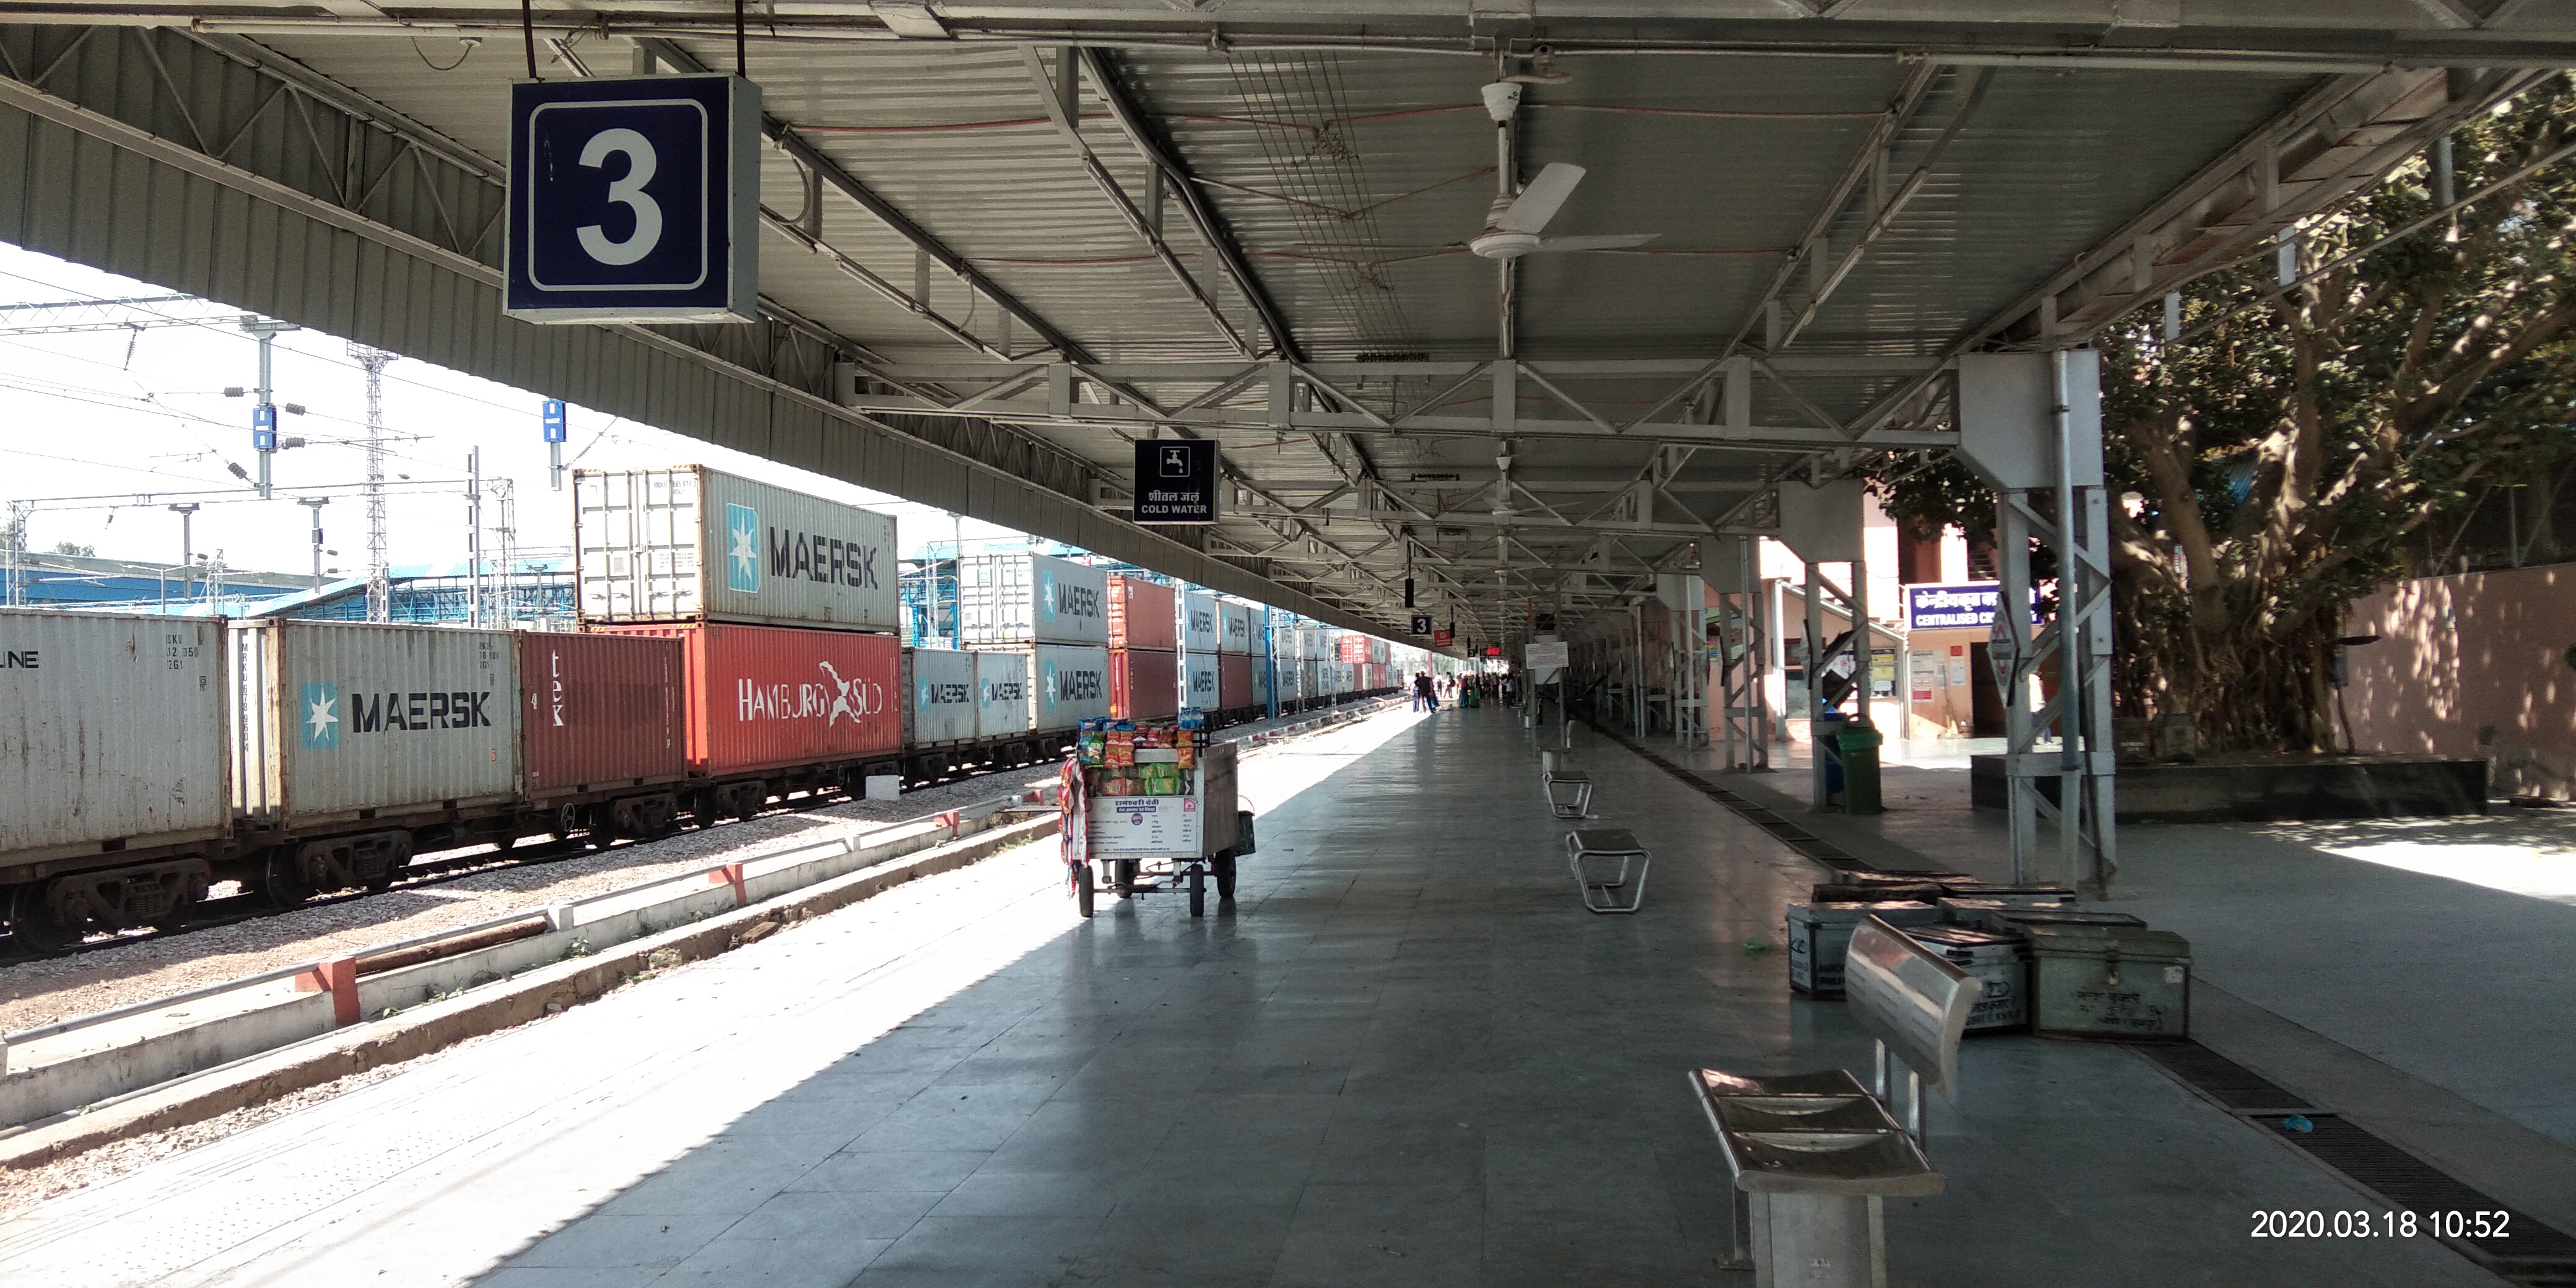 Corona effect  : राजस्थान का सबसे पुराना रेलवे स्टेशन, अब पसरा है सन्नाटा